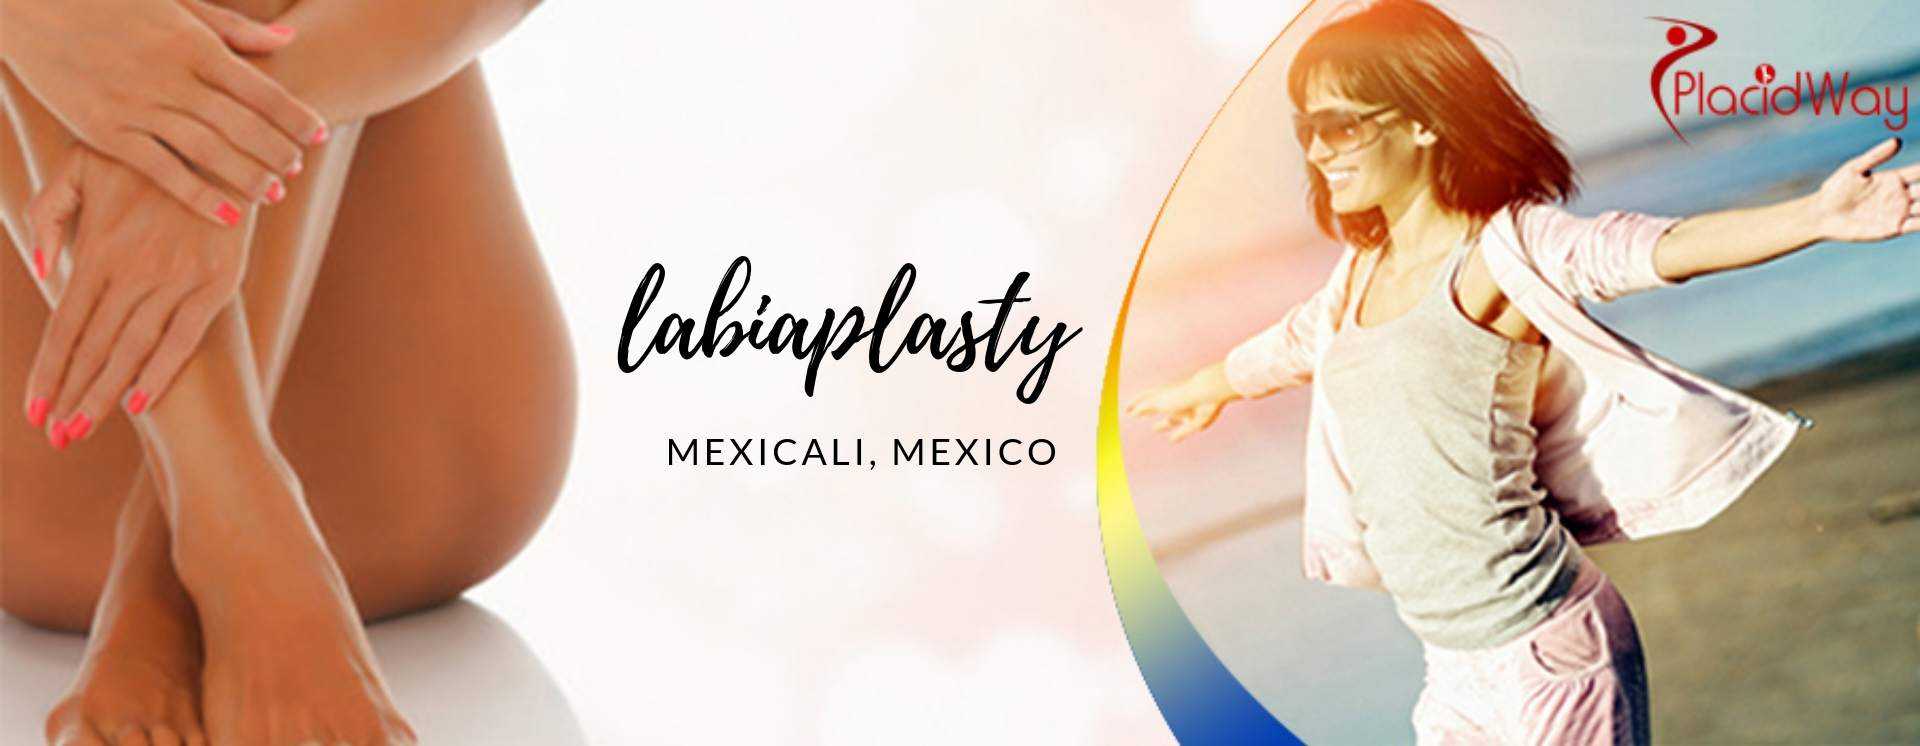 Labiaplasty in Mexicali, Mexico